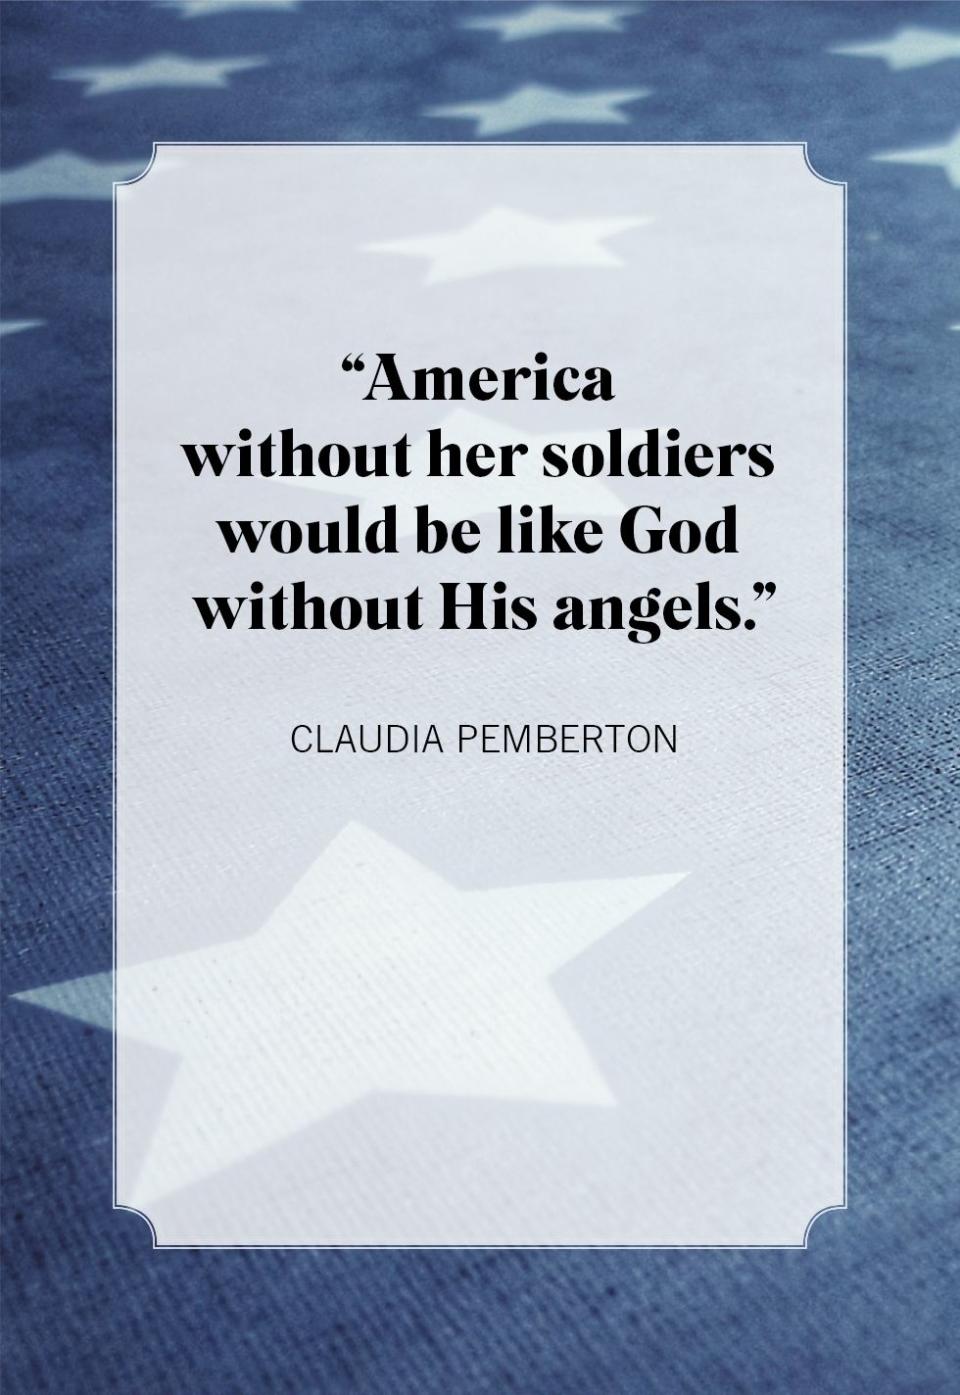 memorial day quotes claudia pemberton